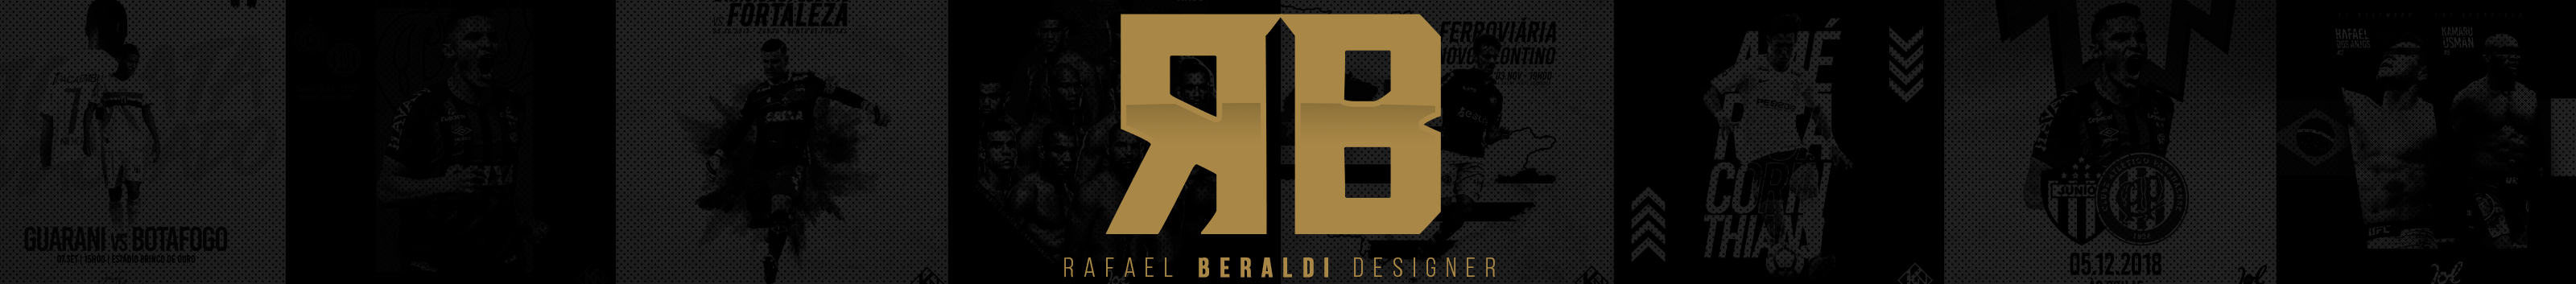 Banner del profilo di Rafael Beraldi